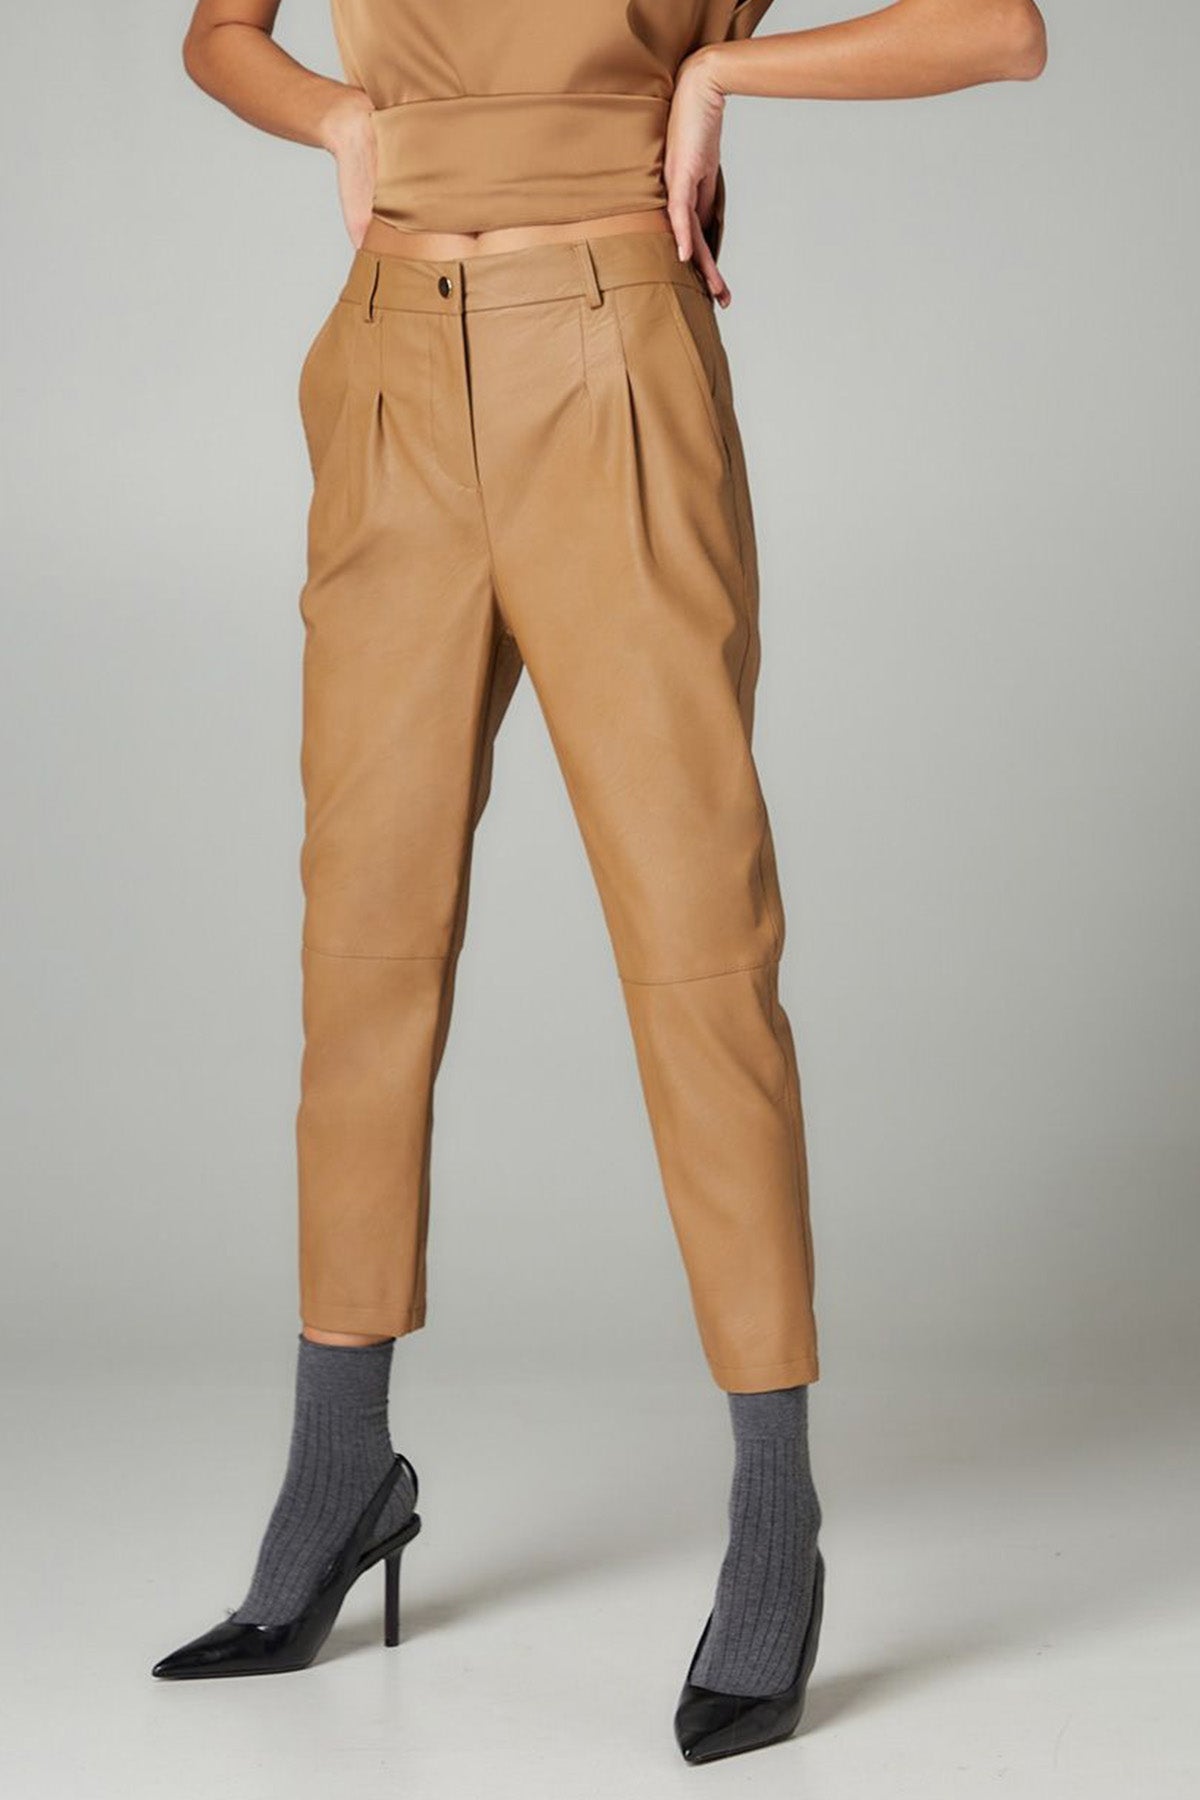 Bsb Beli Lastikli Çift Pile Deri Pantolon-Libas Trendy Fashion Store